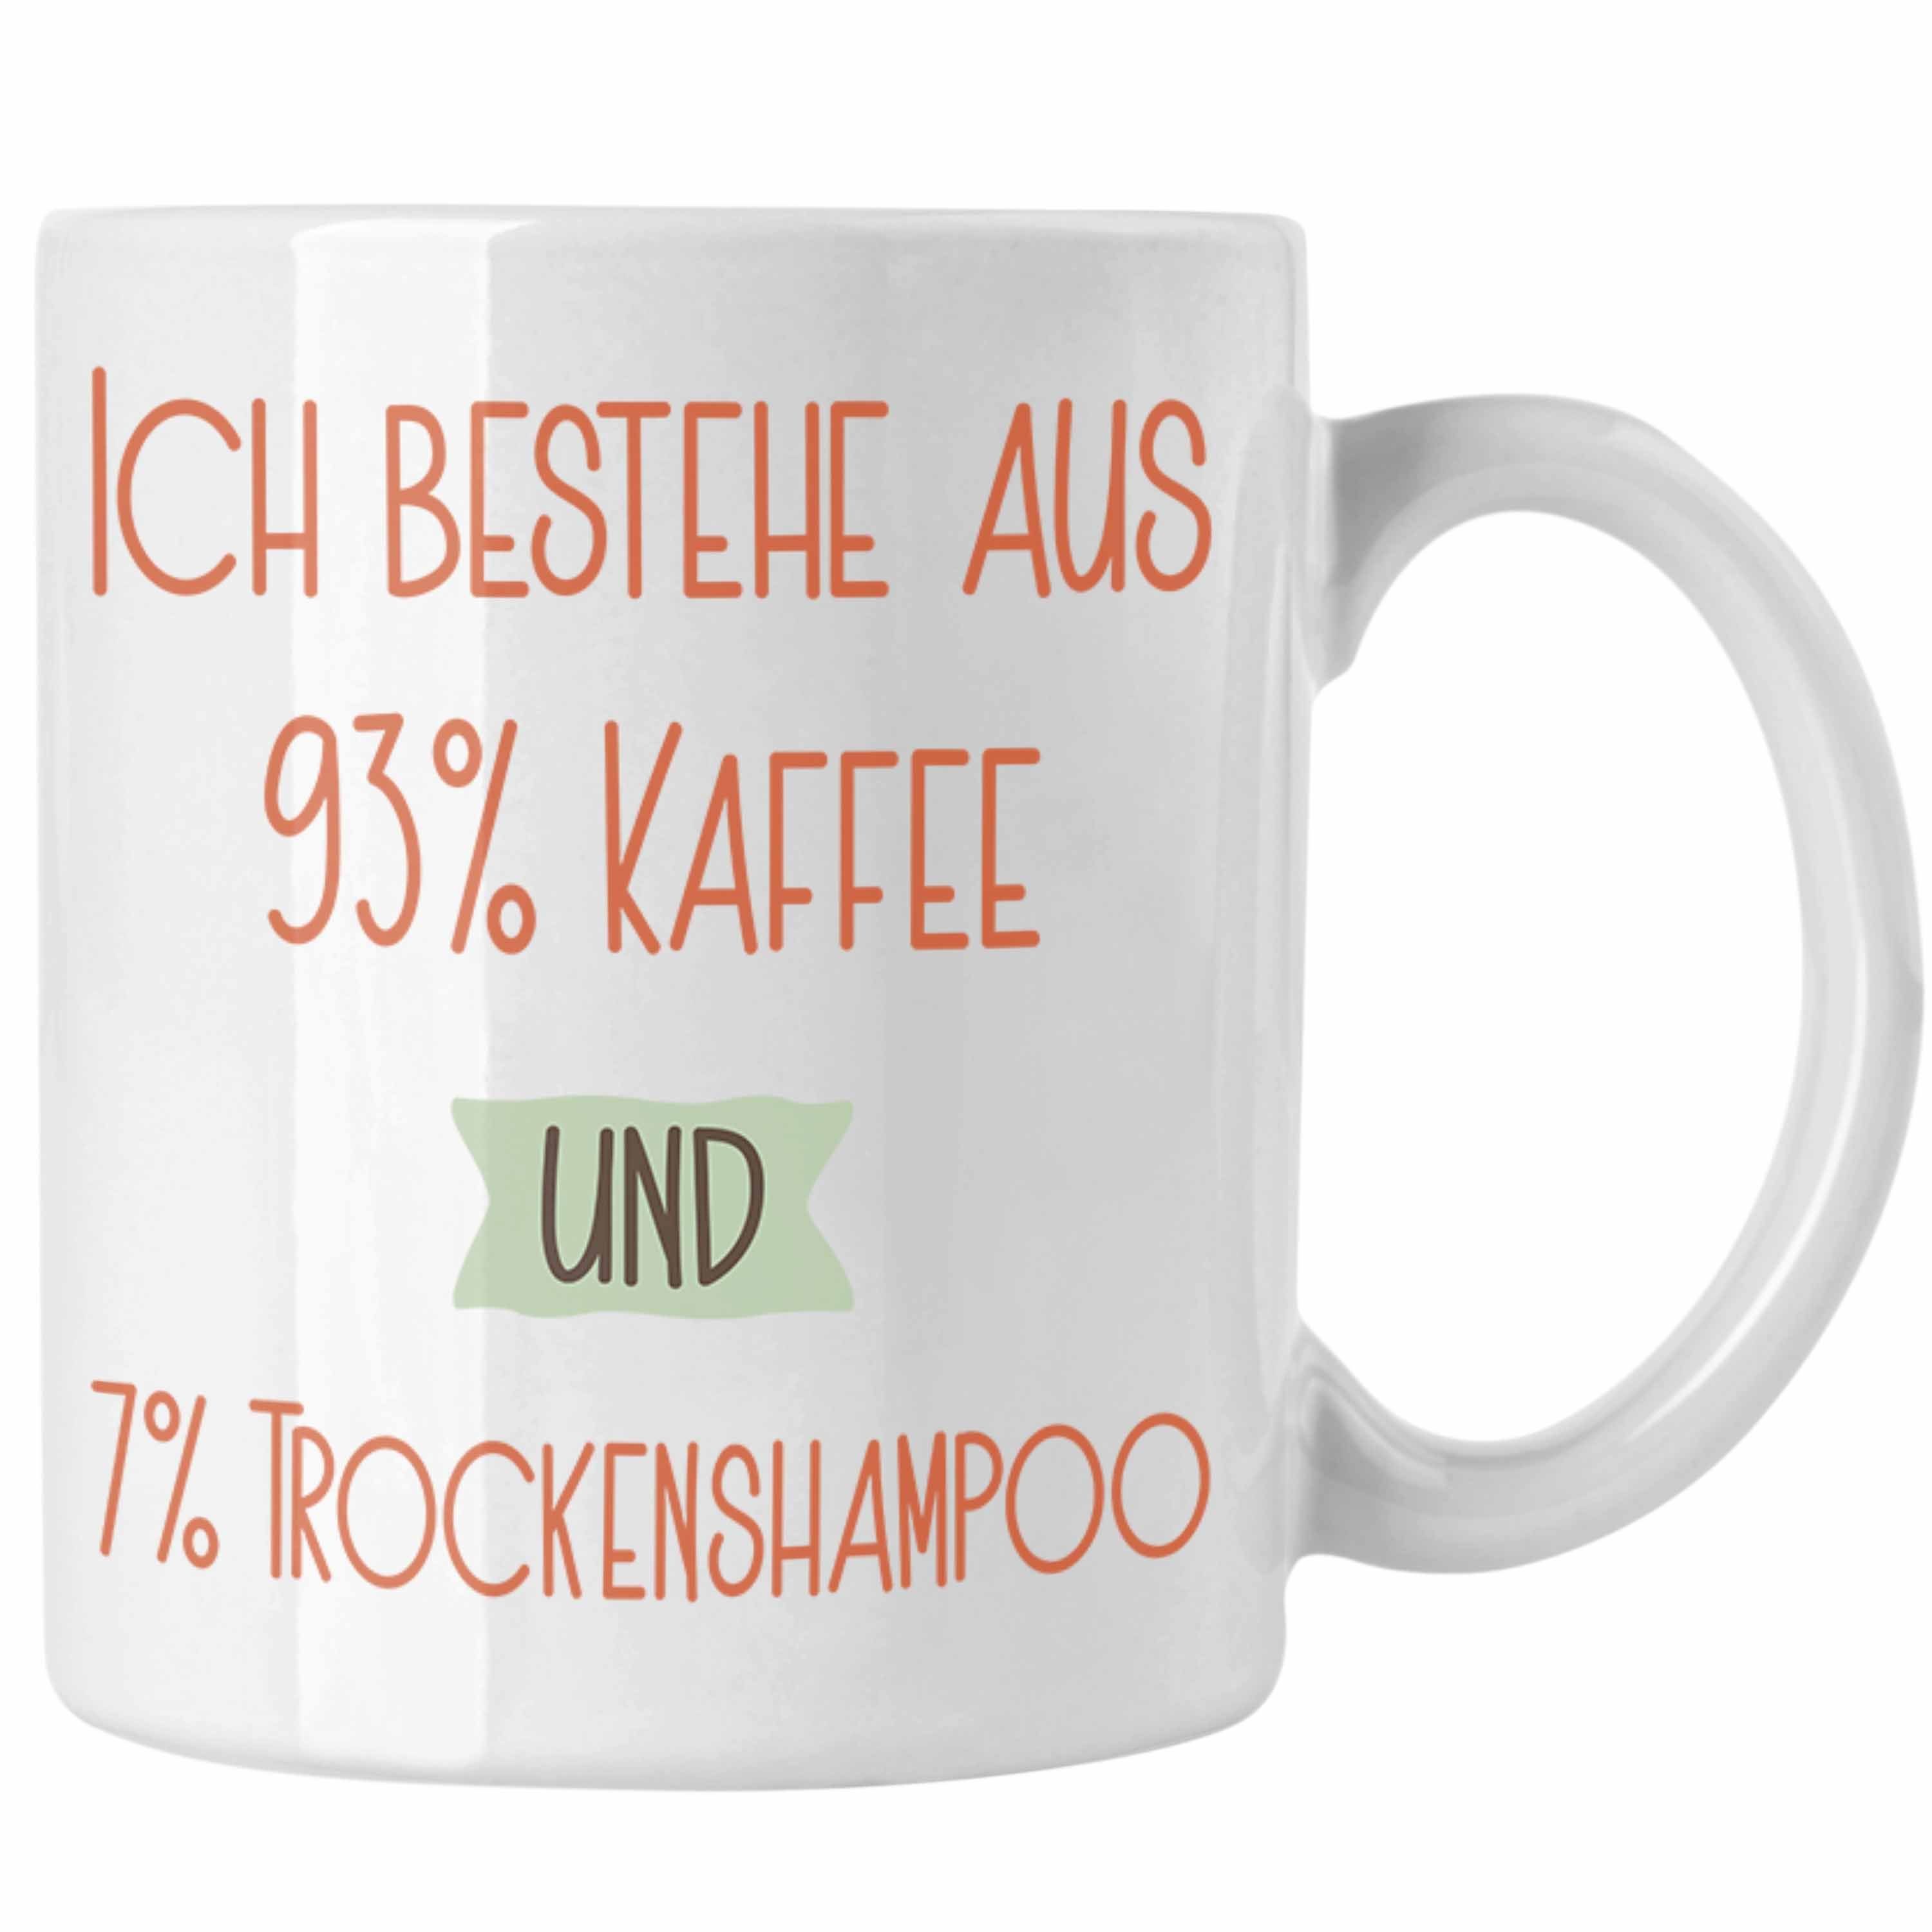 Trendation Tasse 93% Kaffee Geschenk Tasse Für Trockenshampoo und Lustiger Spruch Weiss 7% Ko